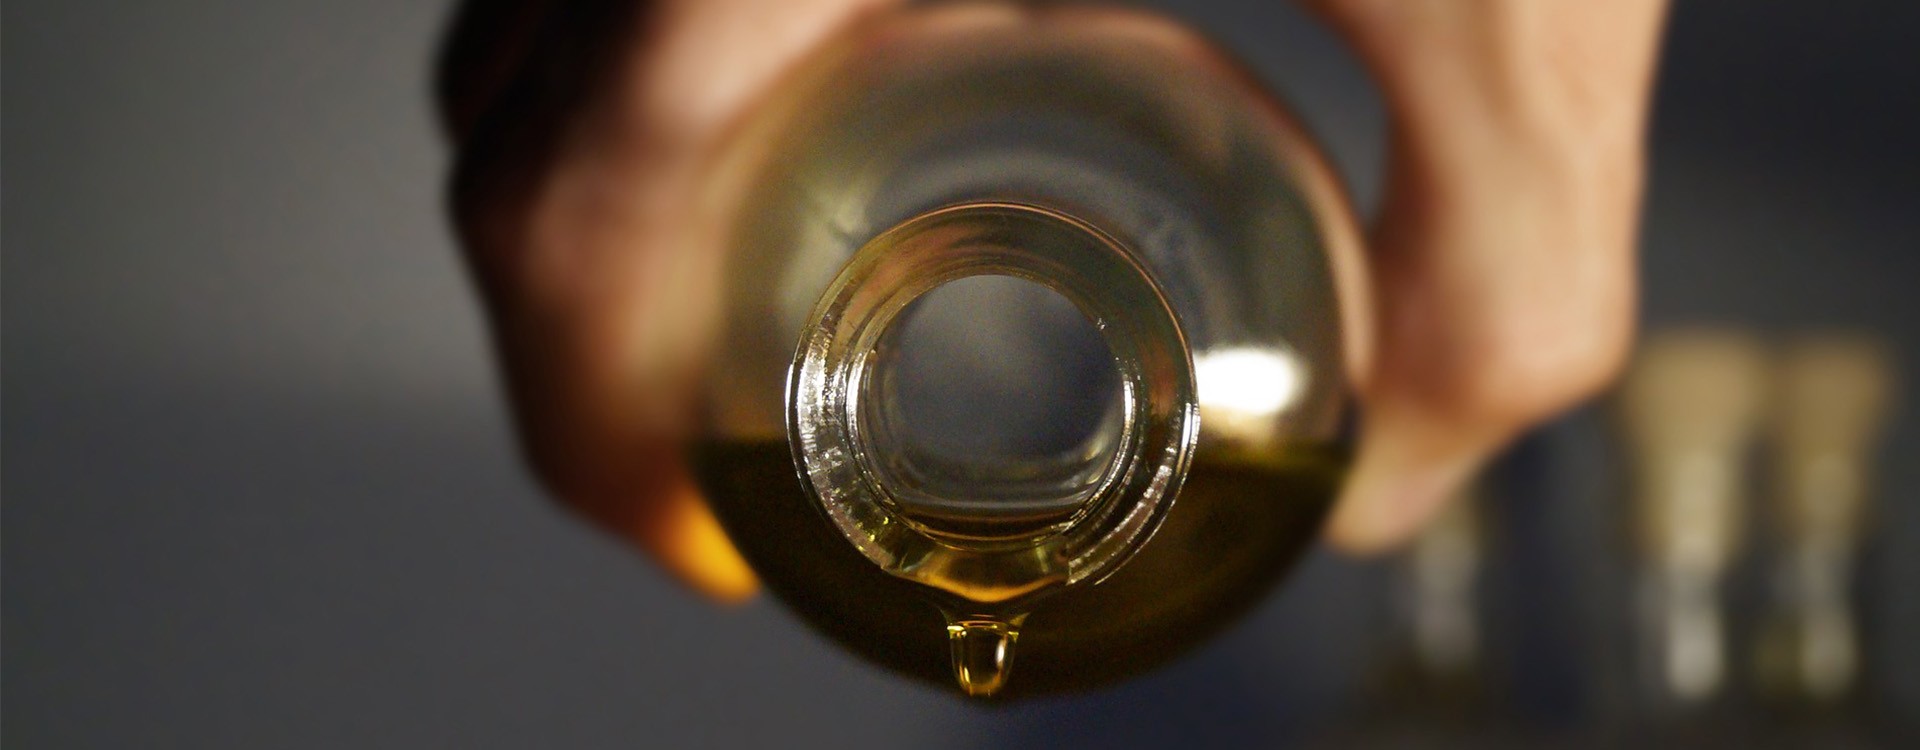 Comment utiliser des huiles essentielles pour parfumer l'intérieur ?